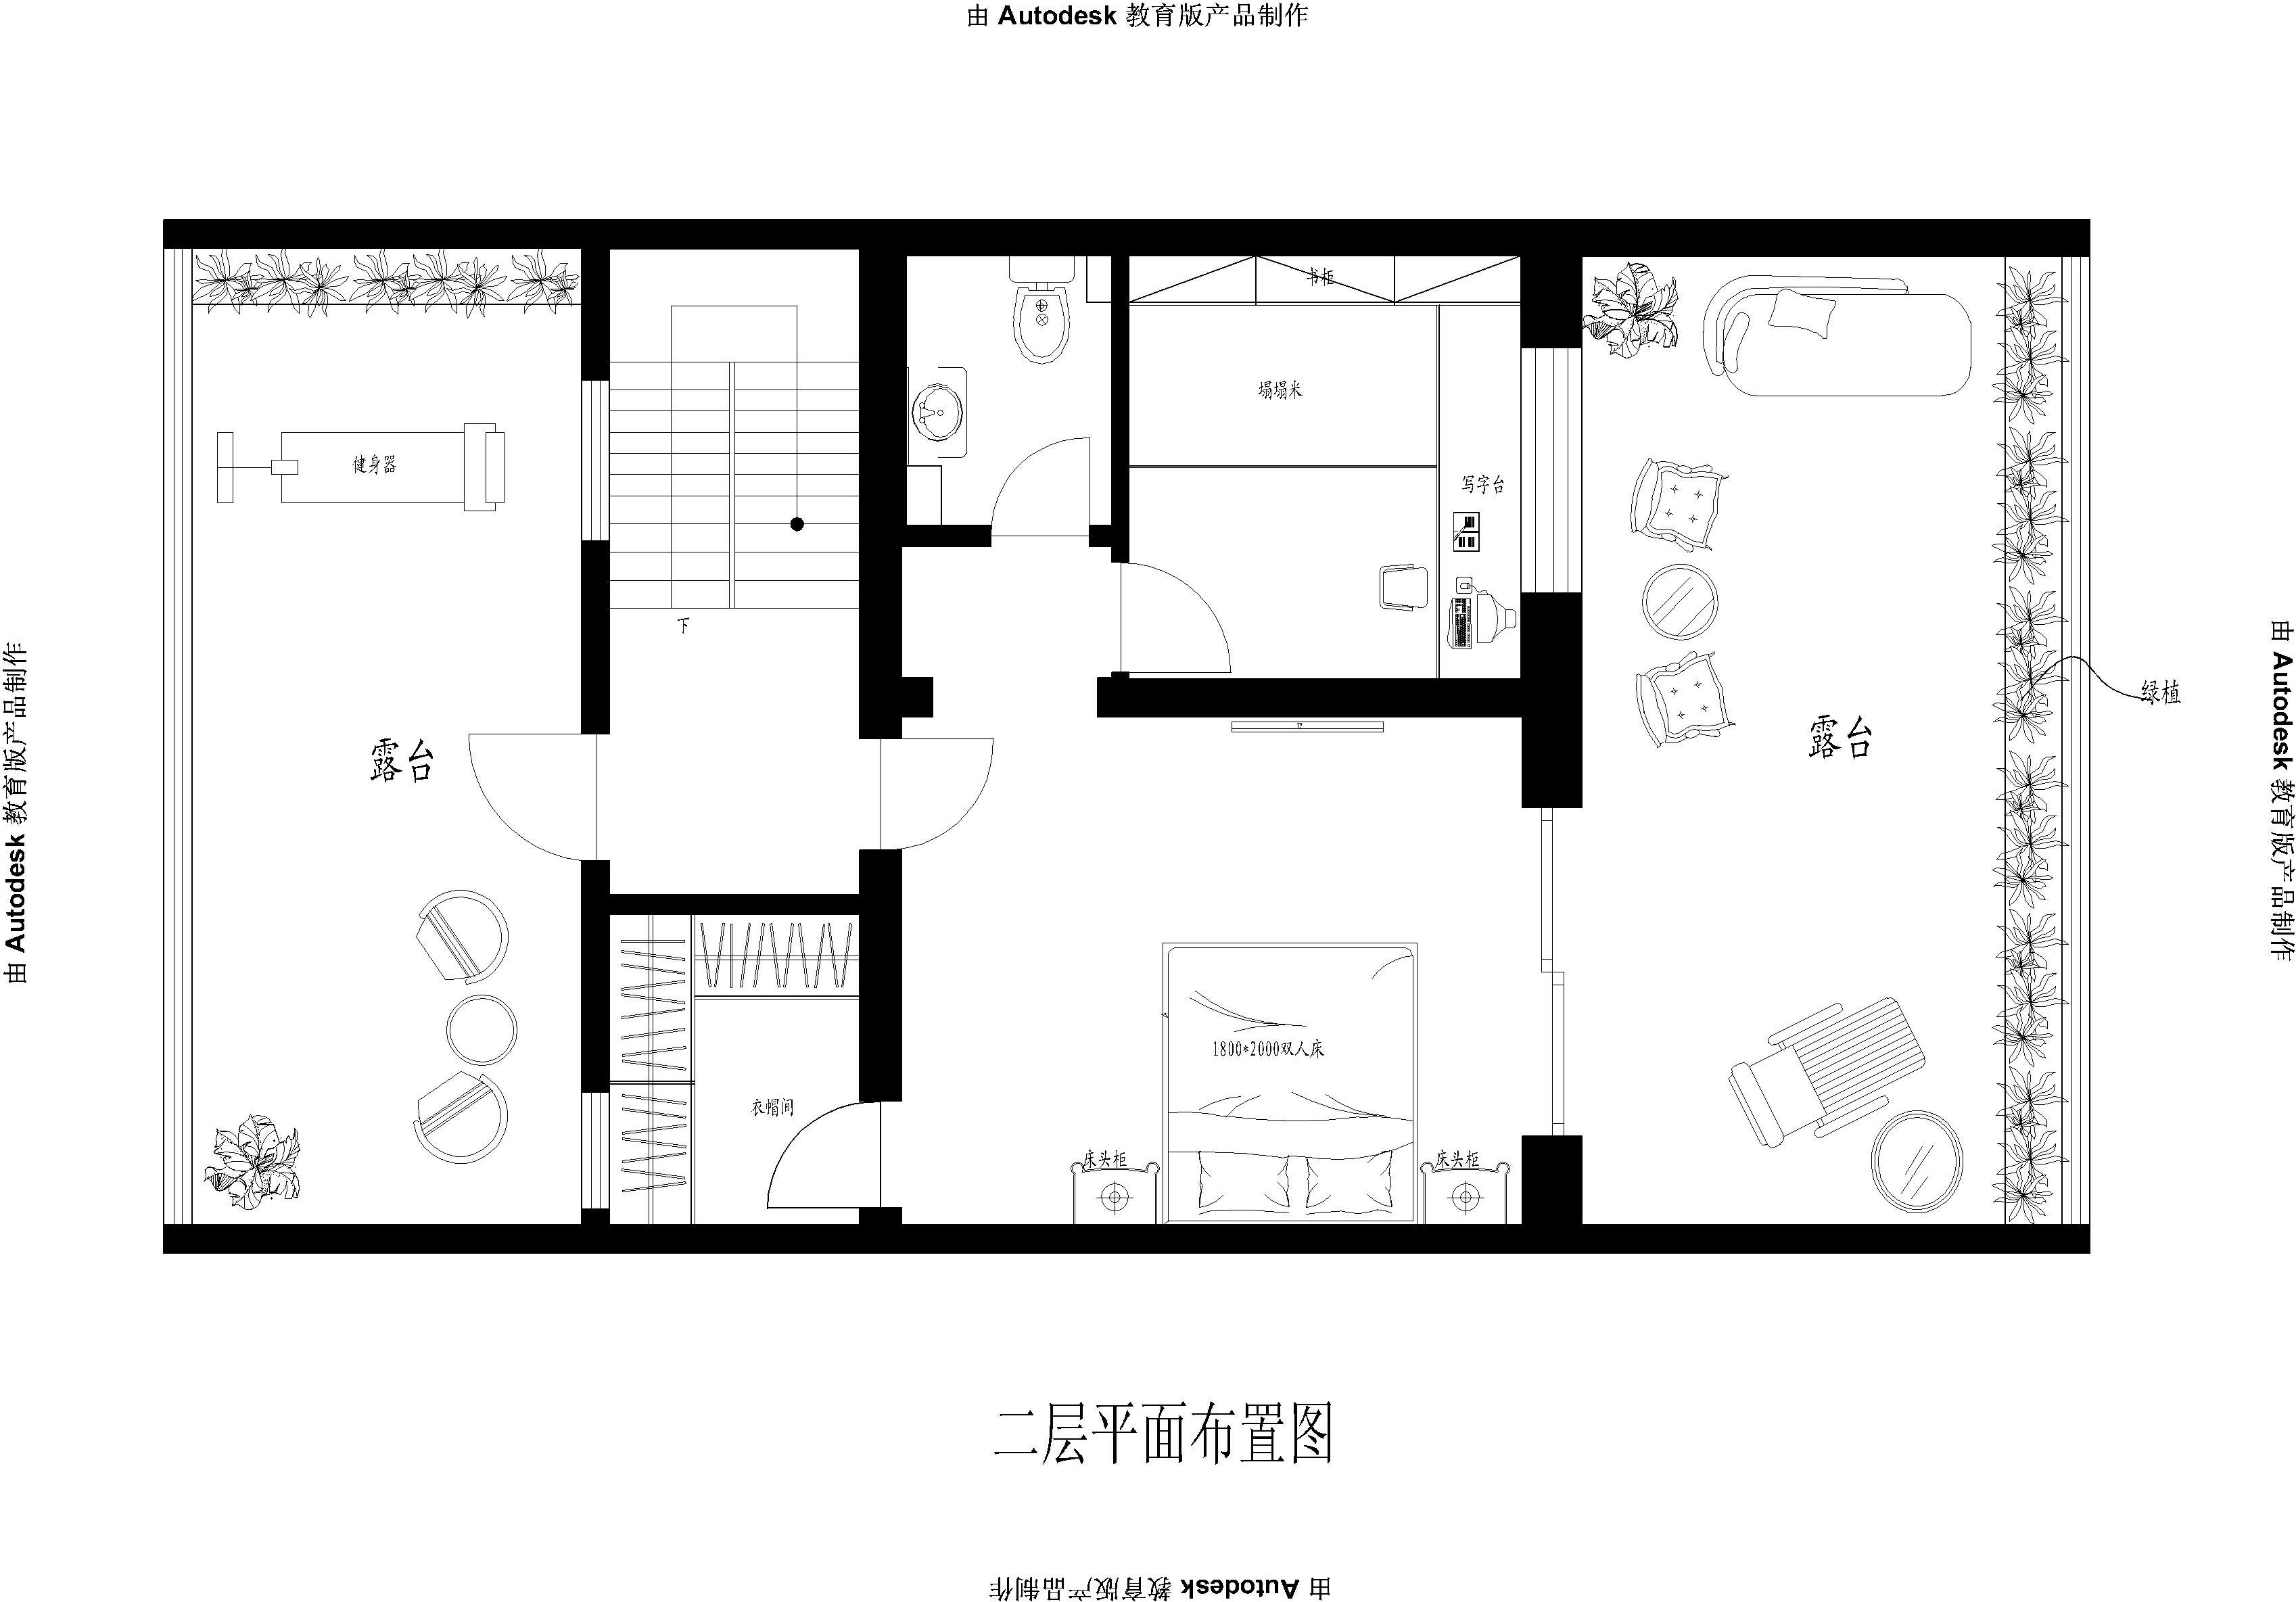 简约 欧式 四居室 户型图图片来自实创装饰上海公司在君悦湾-四居室-简欧风格的分享